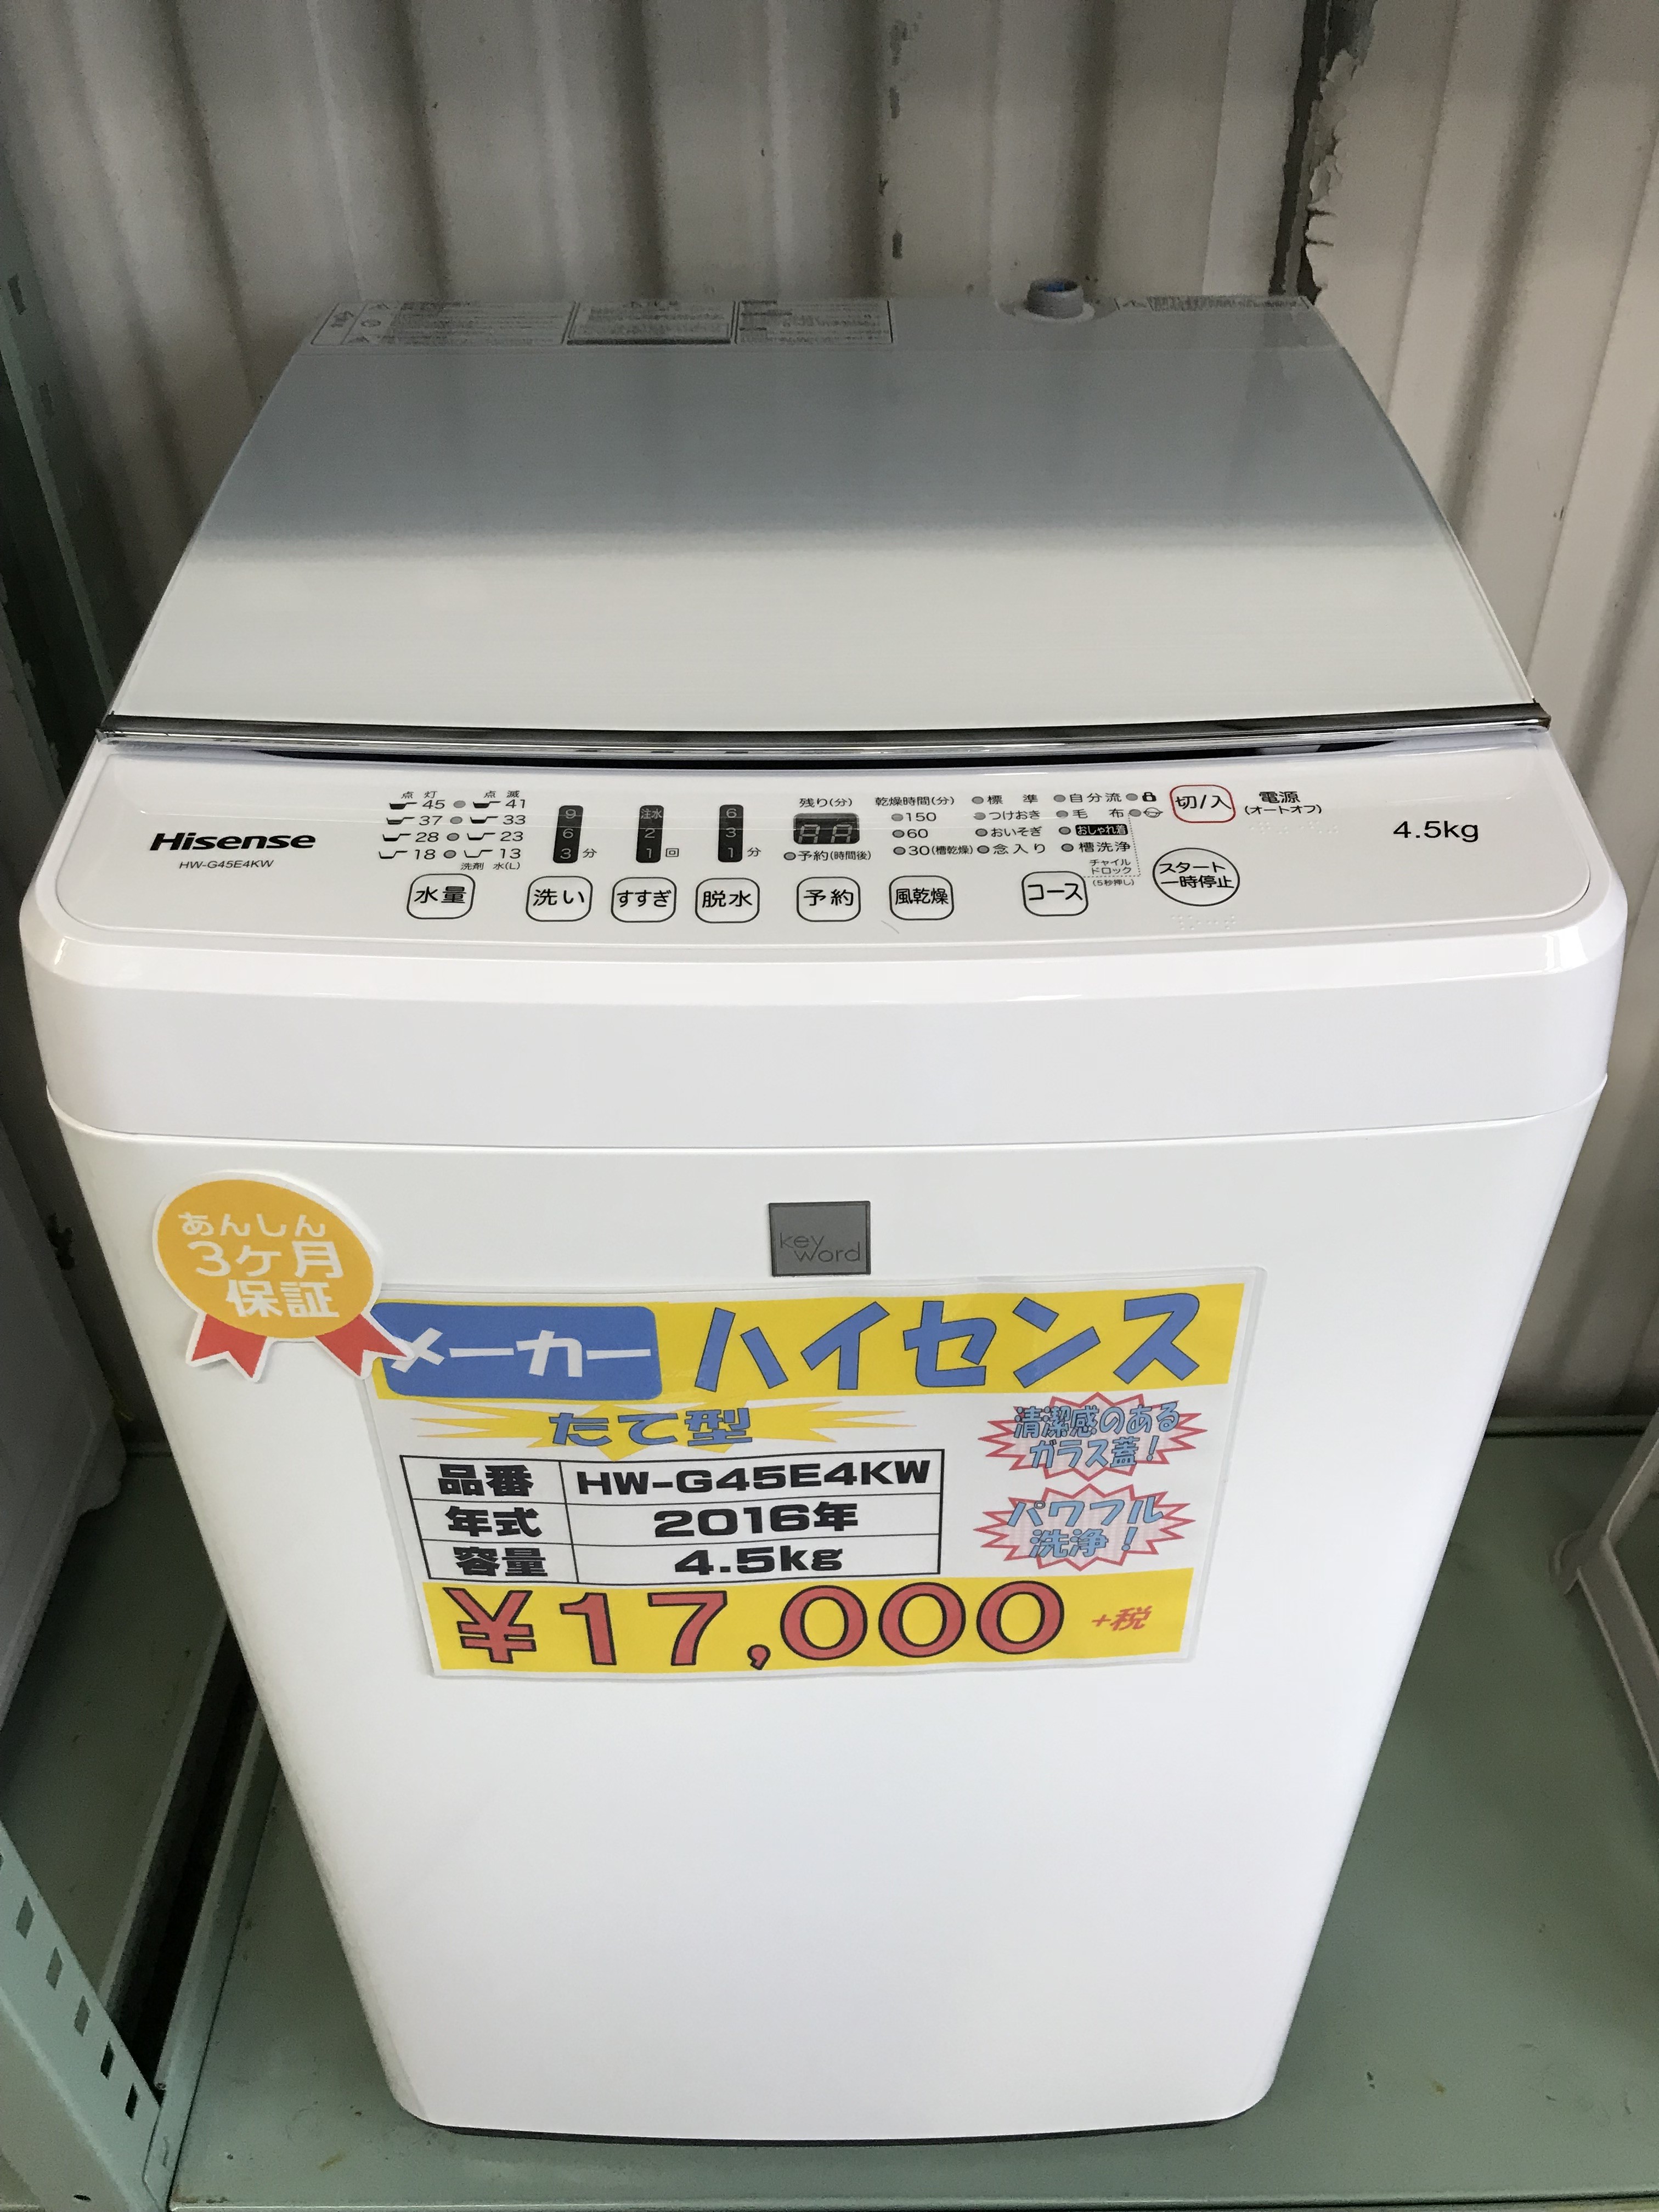 ハイセンス 4.5kg 洗濯機 全自動パワフル洗浄 HW-G45E4KW 2017年製 